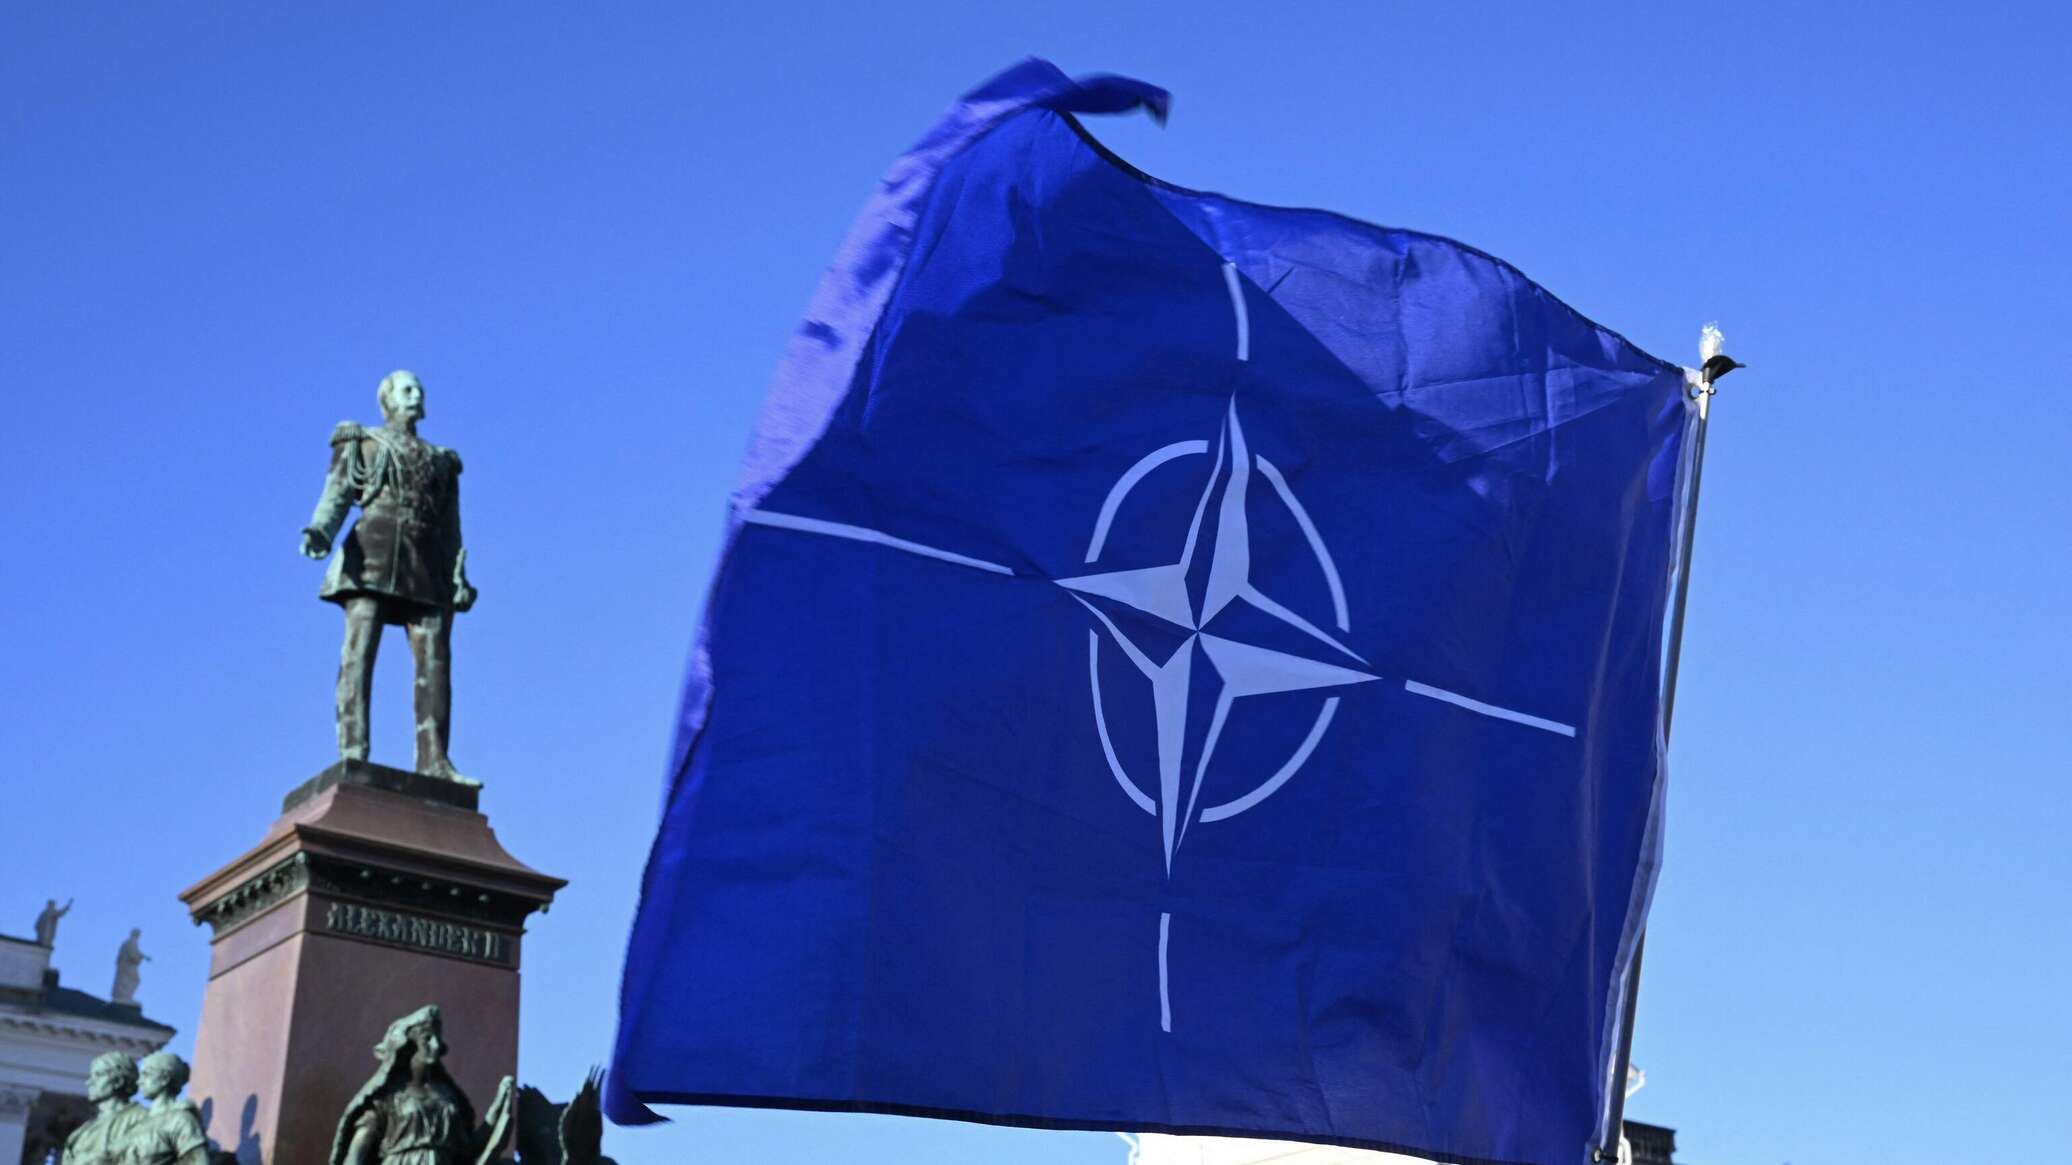 وثيقة تثبت وعد الناتو لروسيا بعدم التدخل في شؤون رابطة الدول المستقلة